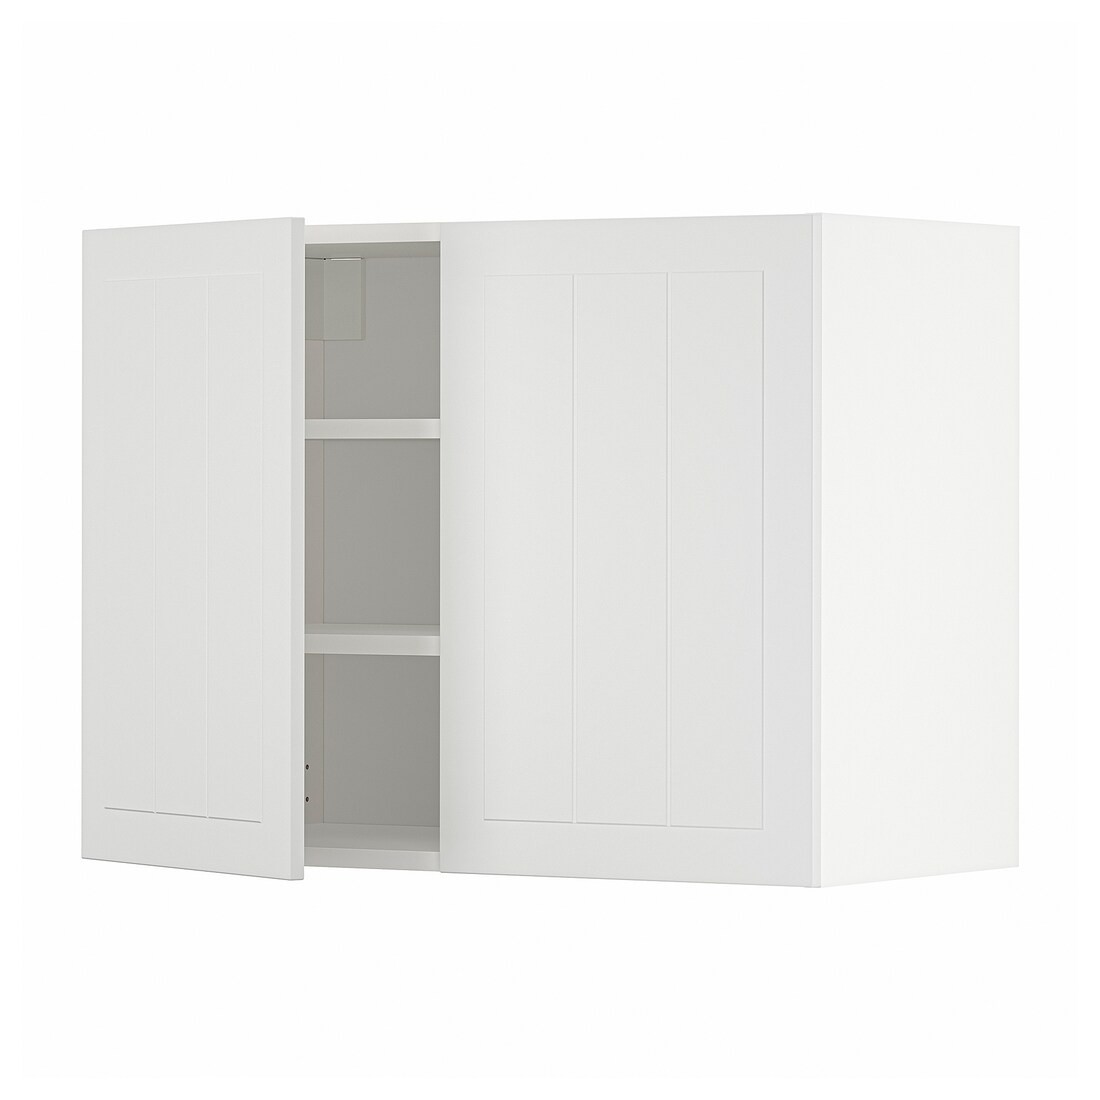 IKEA METOD МЕТОД Навісна шафа з полицями / 2 дверцят, білий / Stensund білий, 80x60 см 89469664 894.696.64